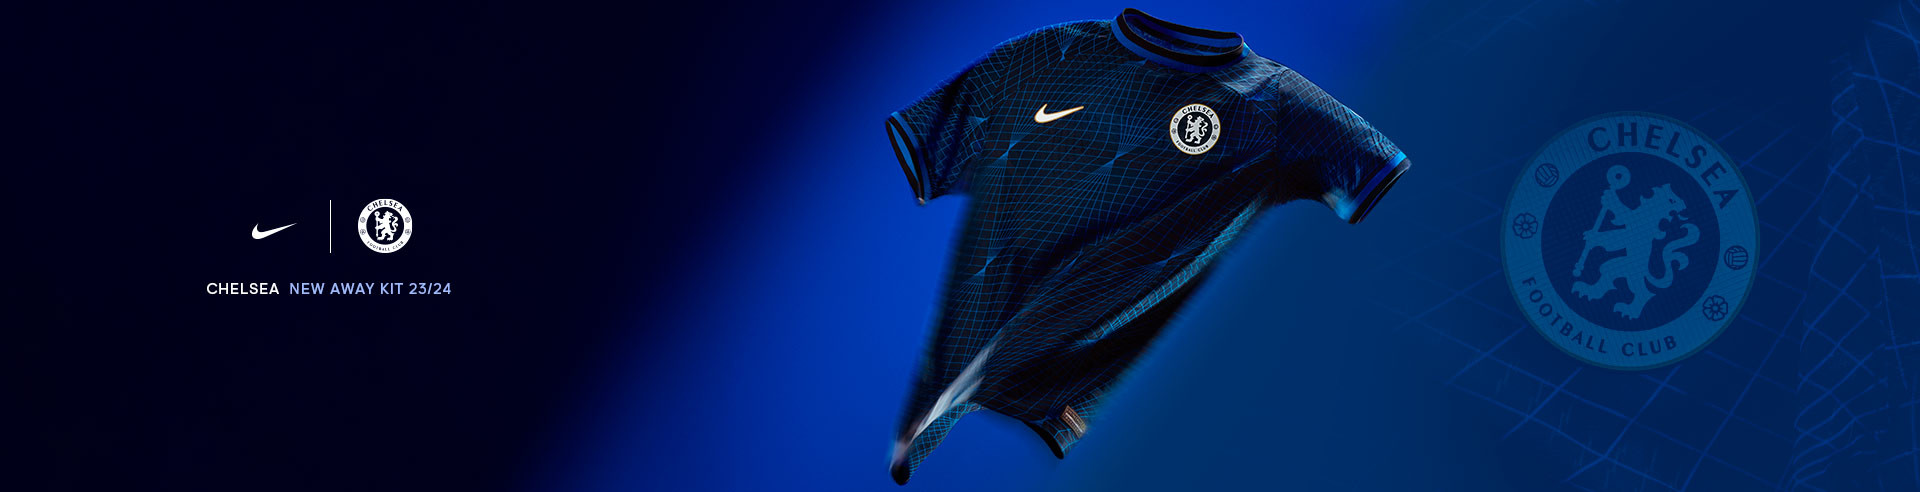 Nike Chelsea Away Kit 23/24 EN